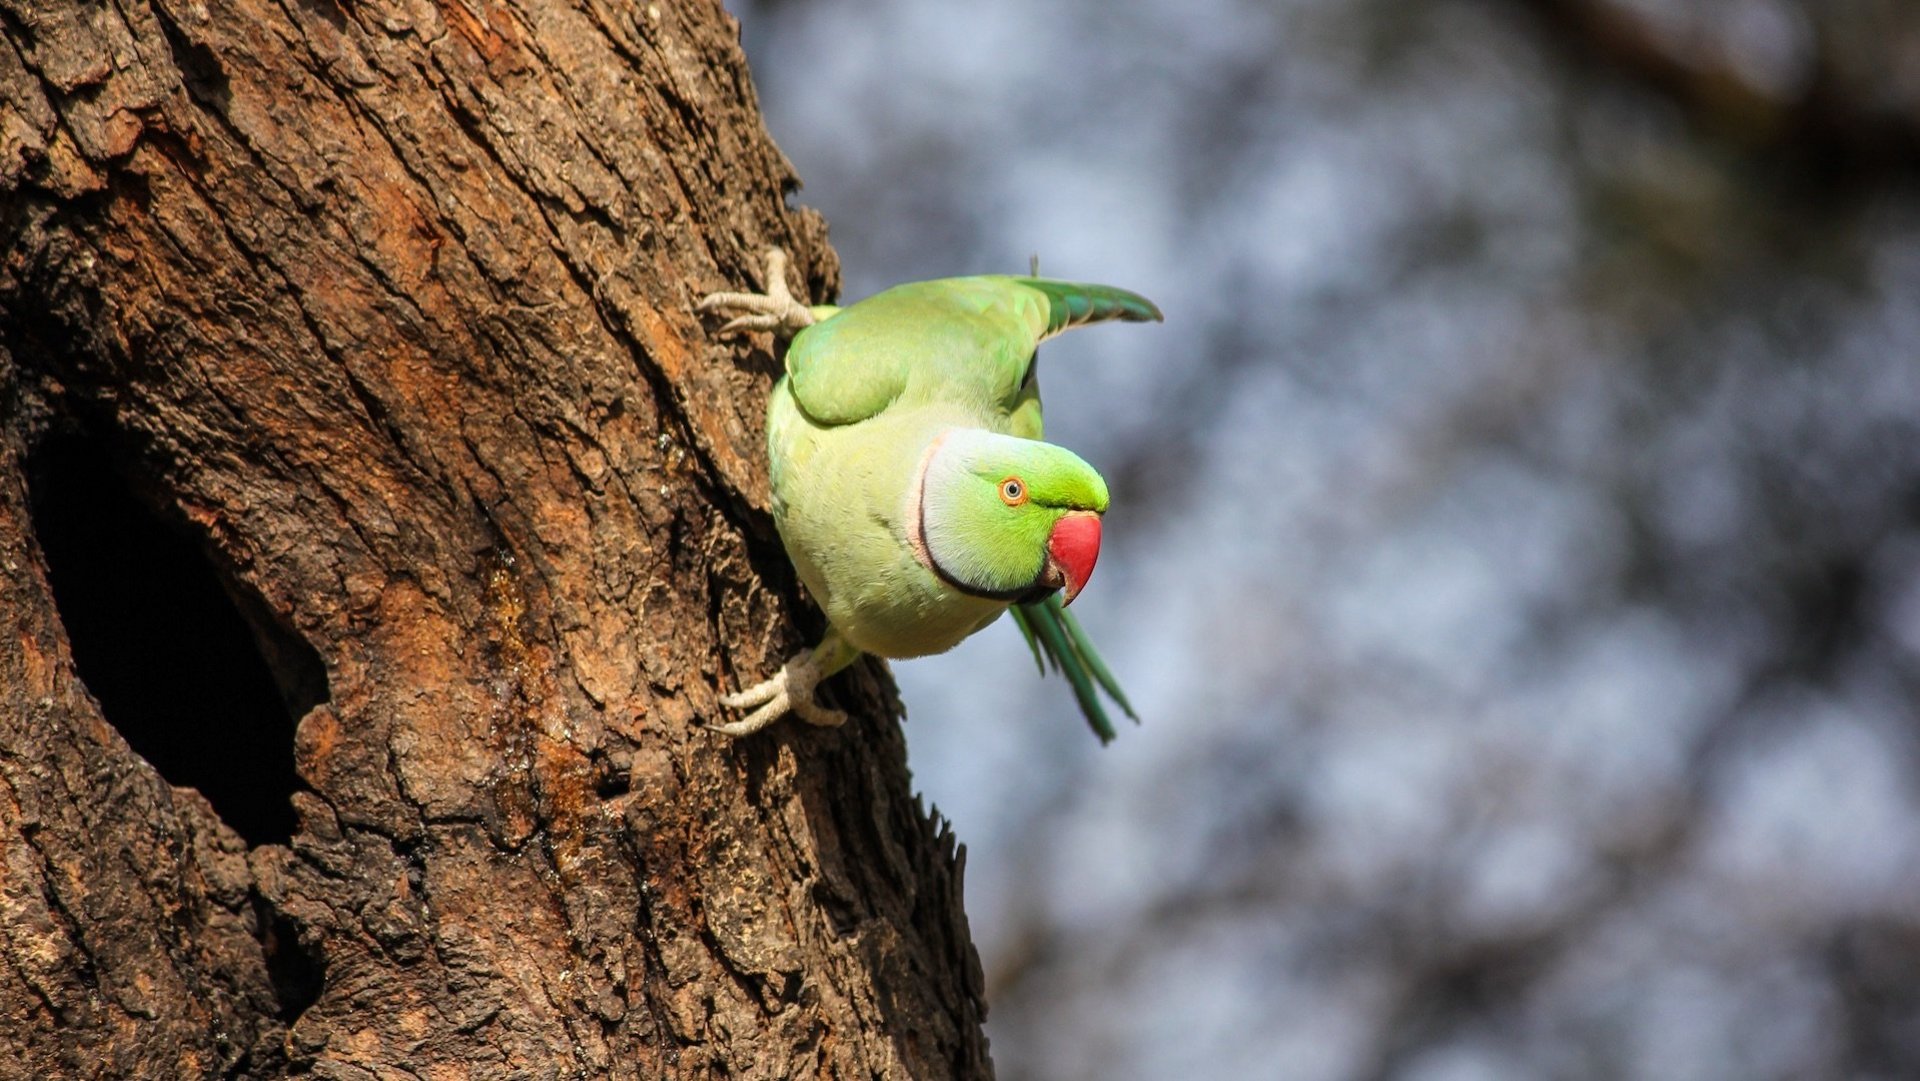 Das Bild zeigt einen grünen Halsbandsittich auf einem Baumstamm.